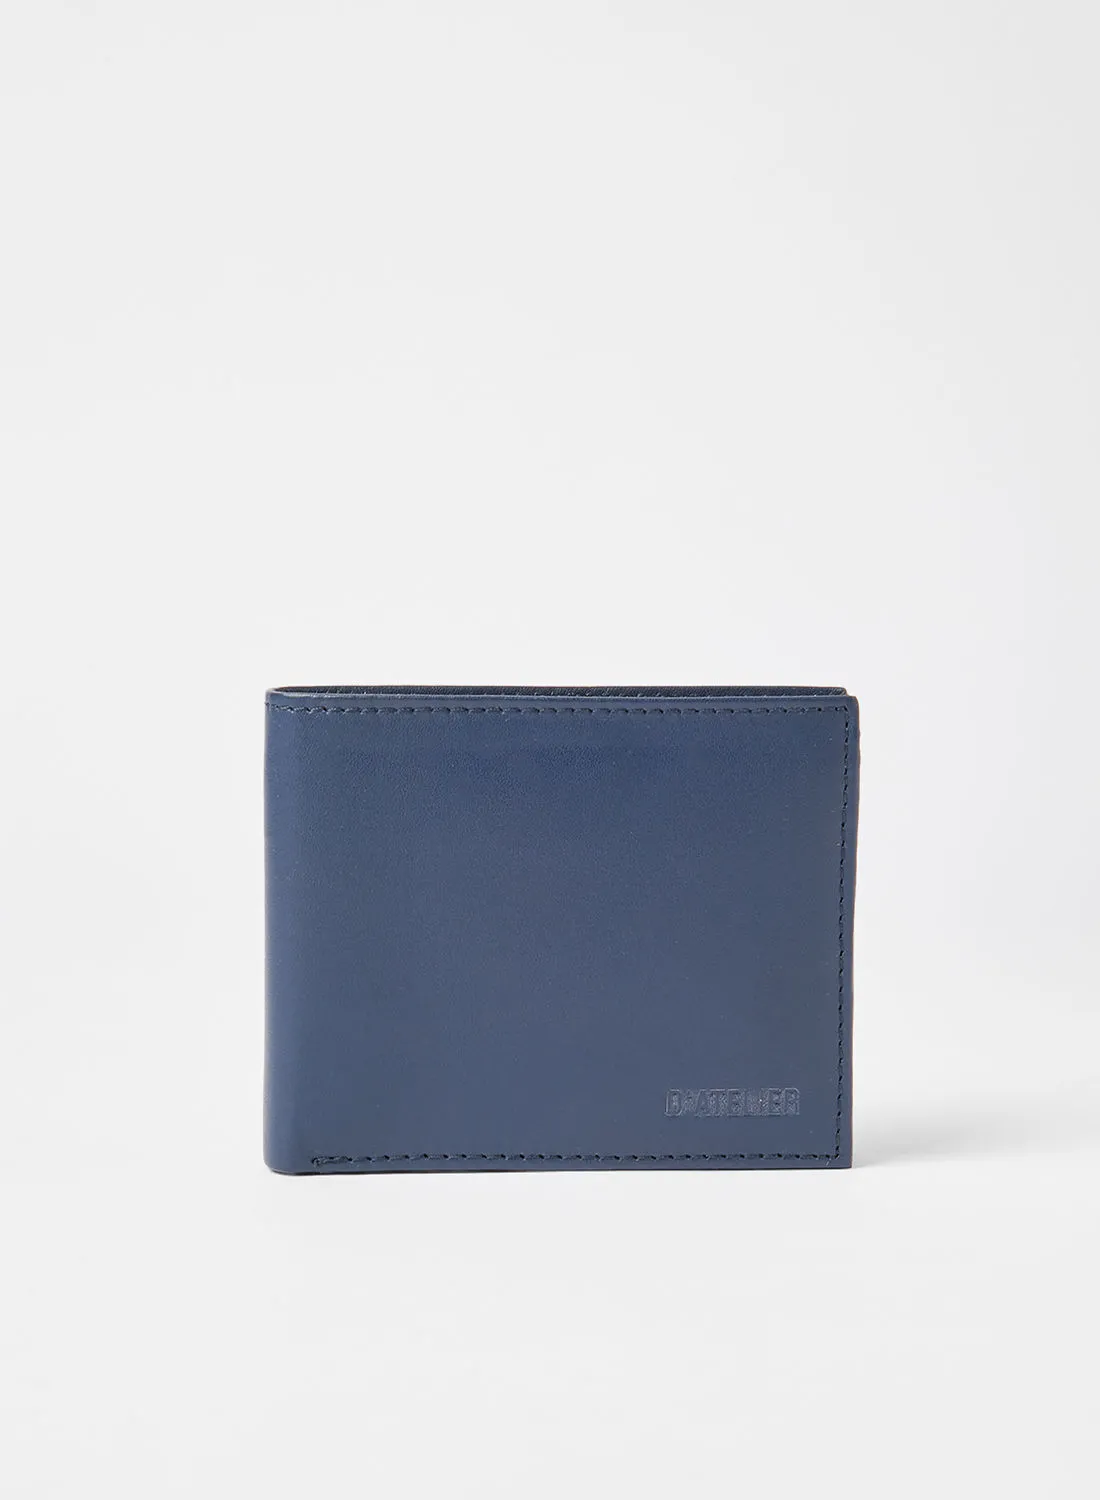 Sivvi x D'Atelier Leather Bi-Fold Wallet Navy